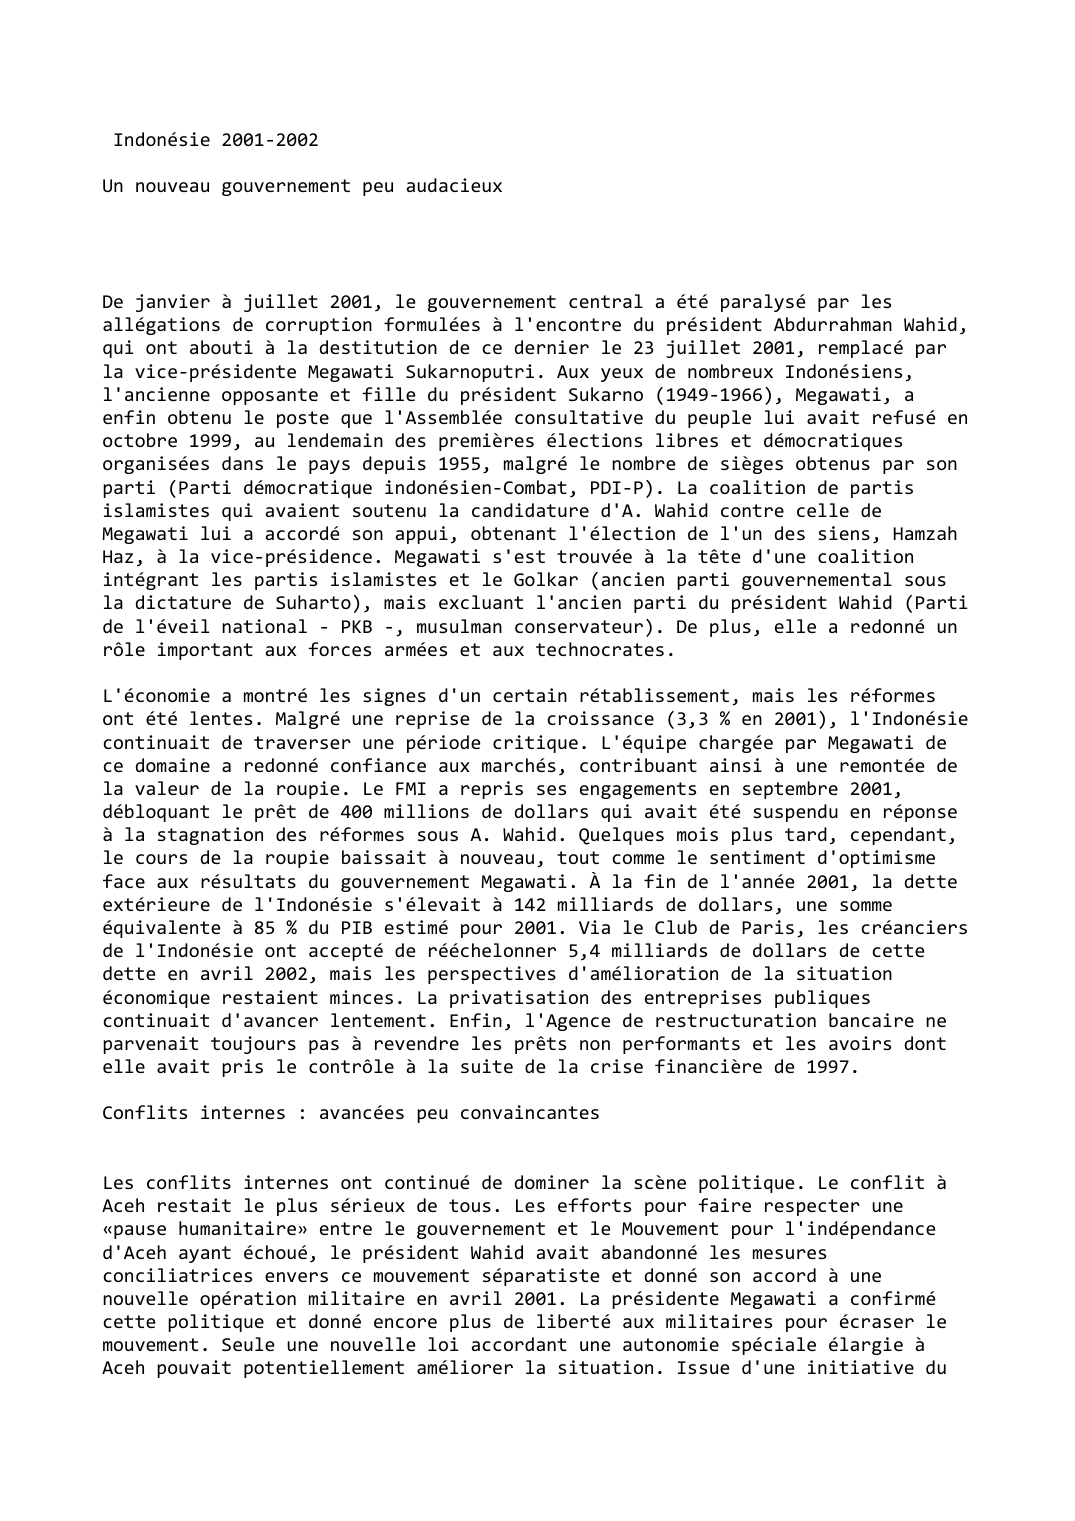 Prévisualisation du document Indonésie 2001-2002

Un nouveau gouvernement peu audacieux